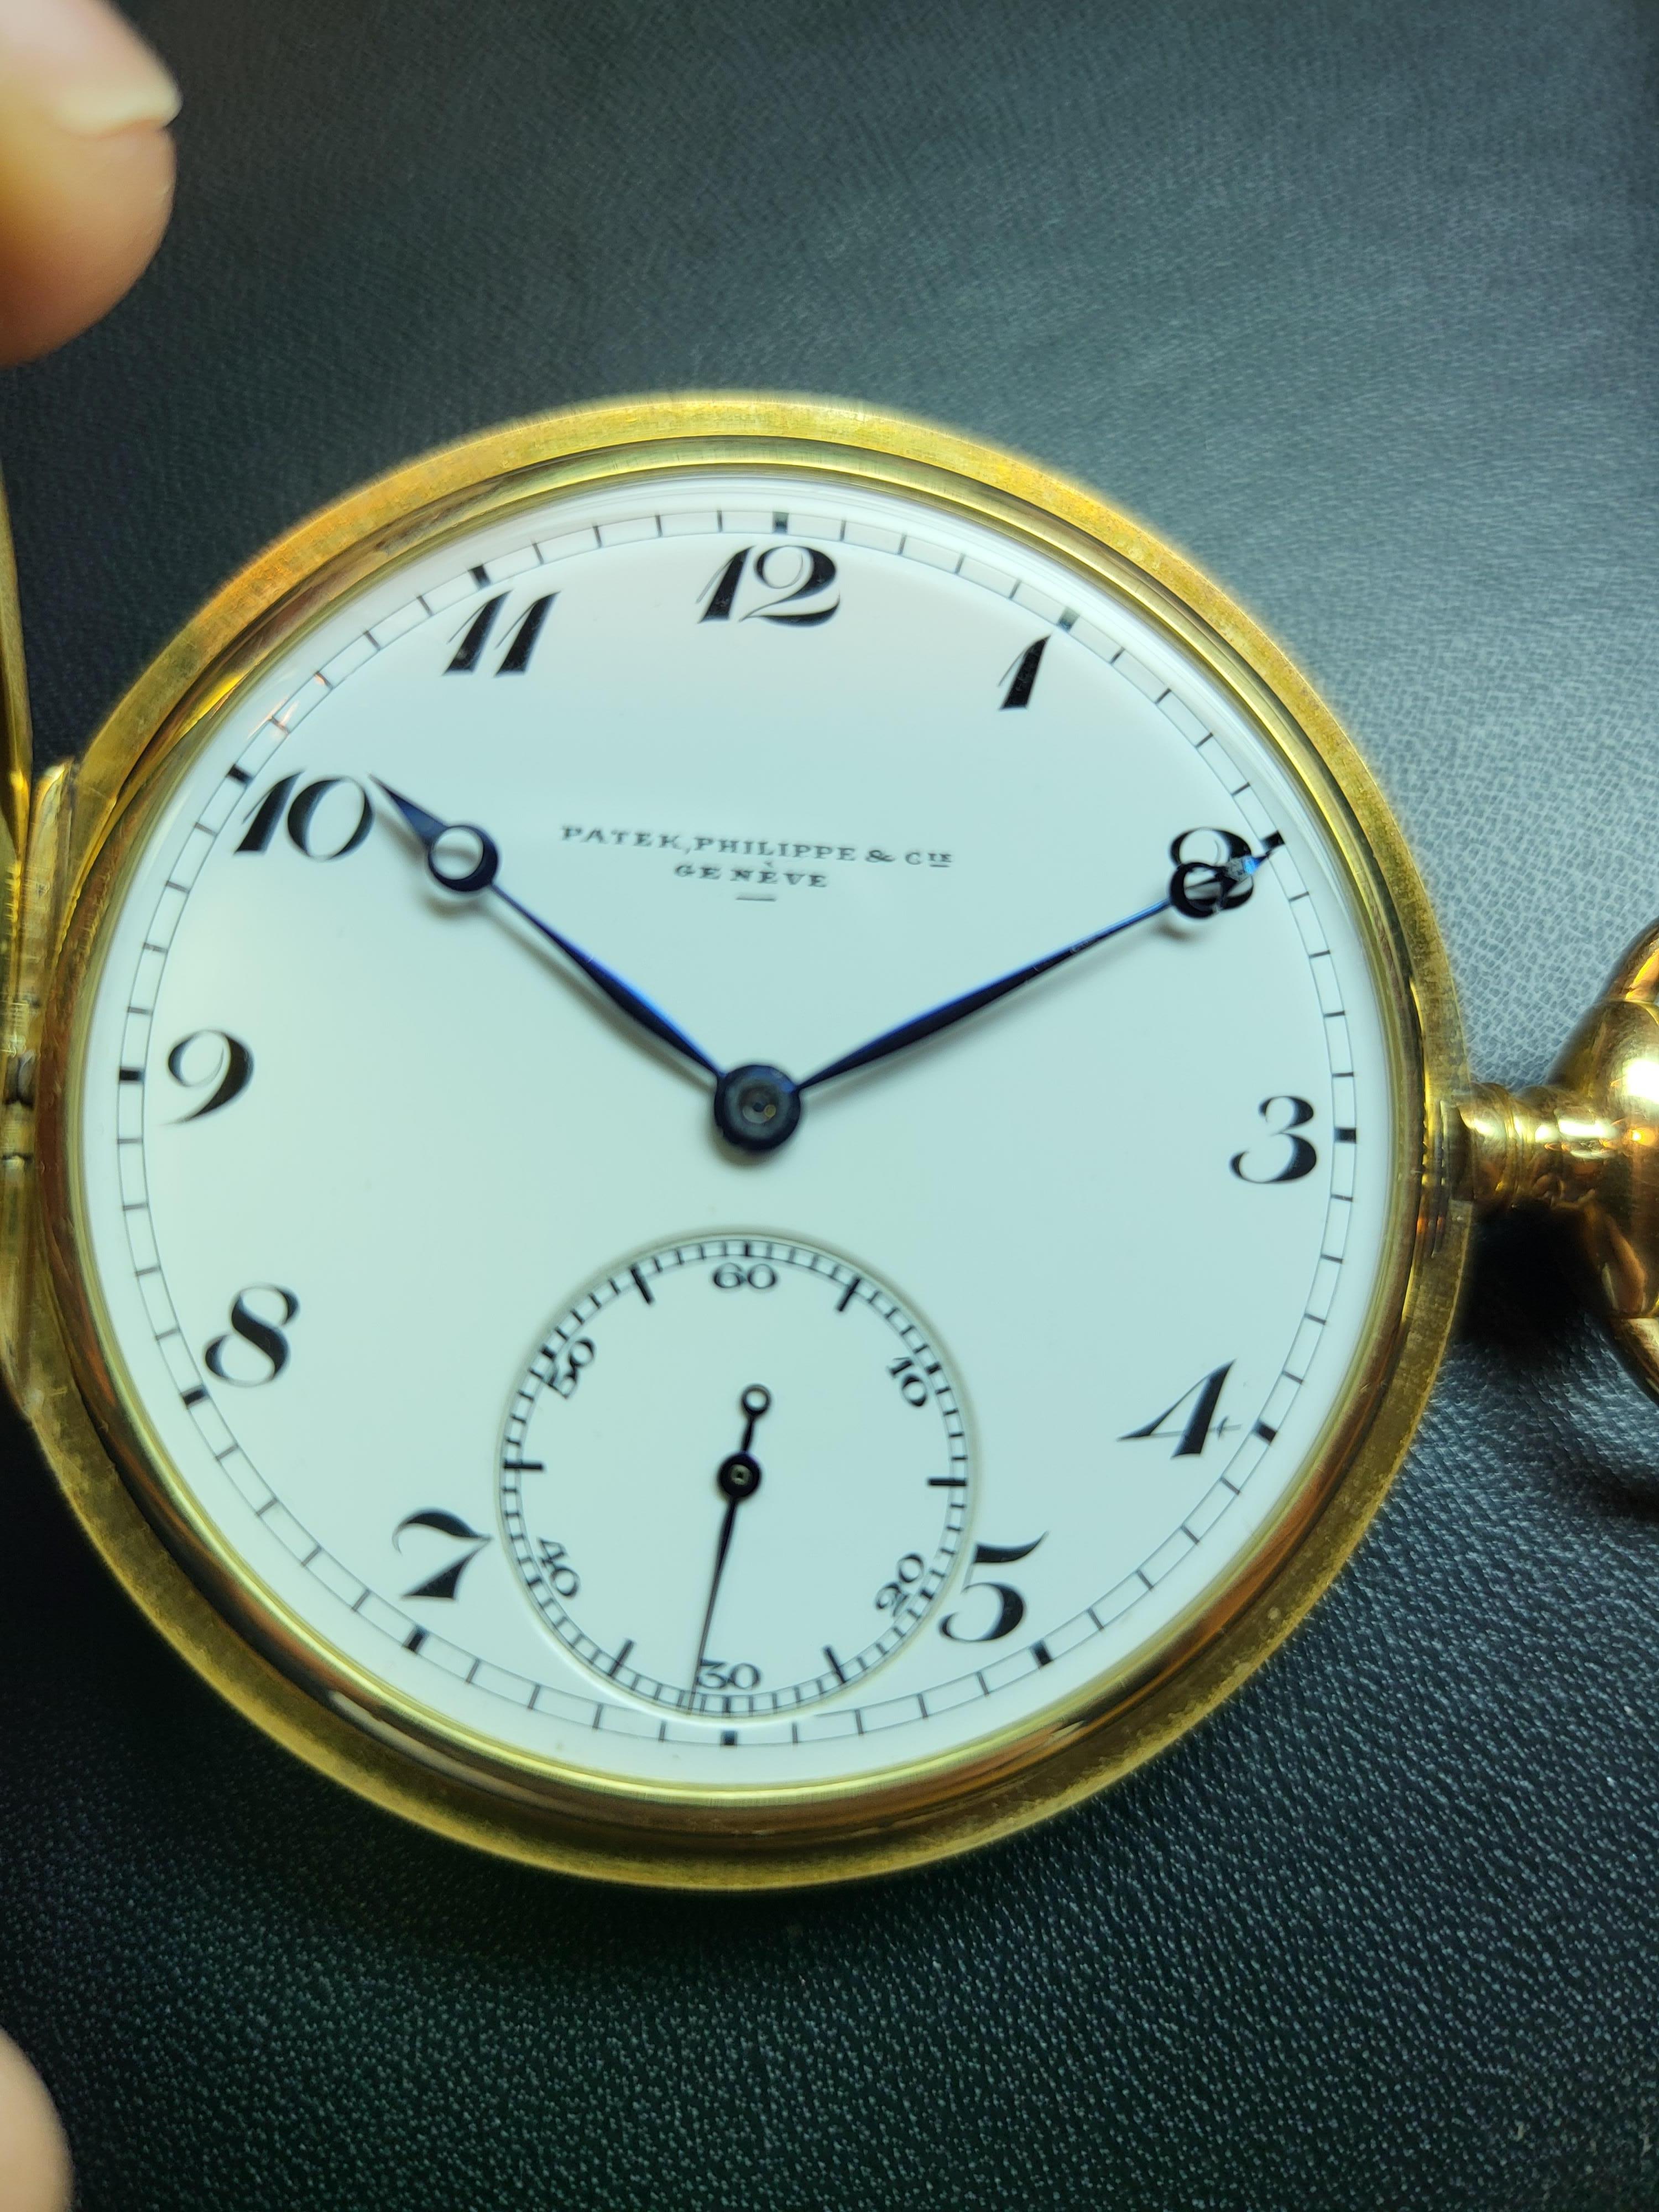 18kt Yellow Gold Patek Philippe & Cie Savonette / Hunter Case Pocket Watch 8